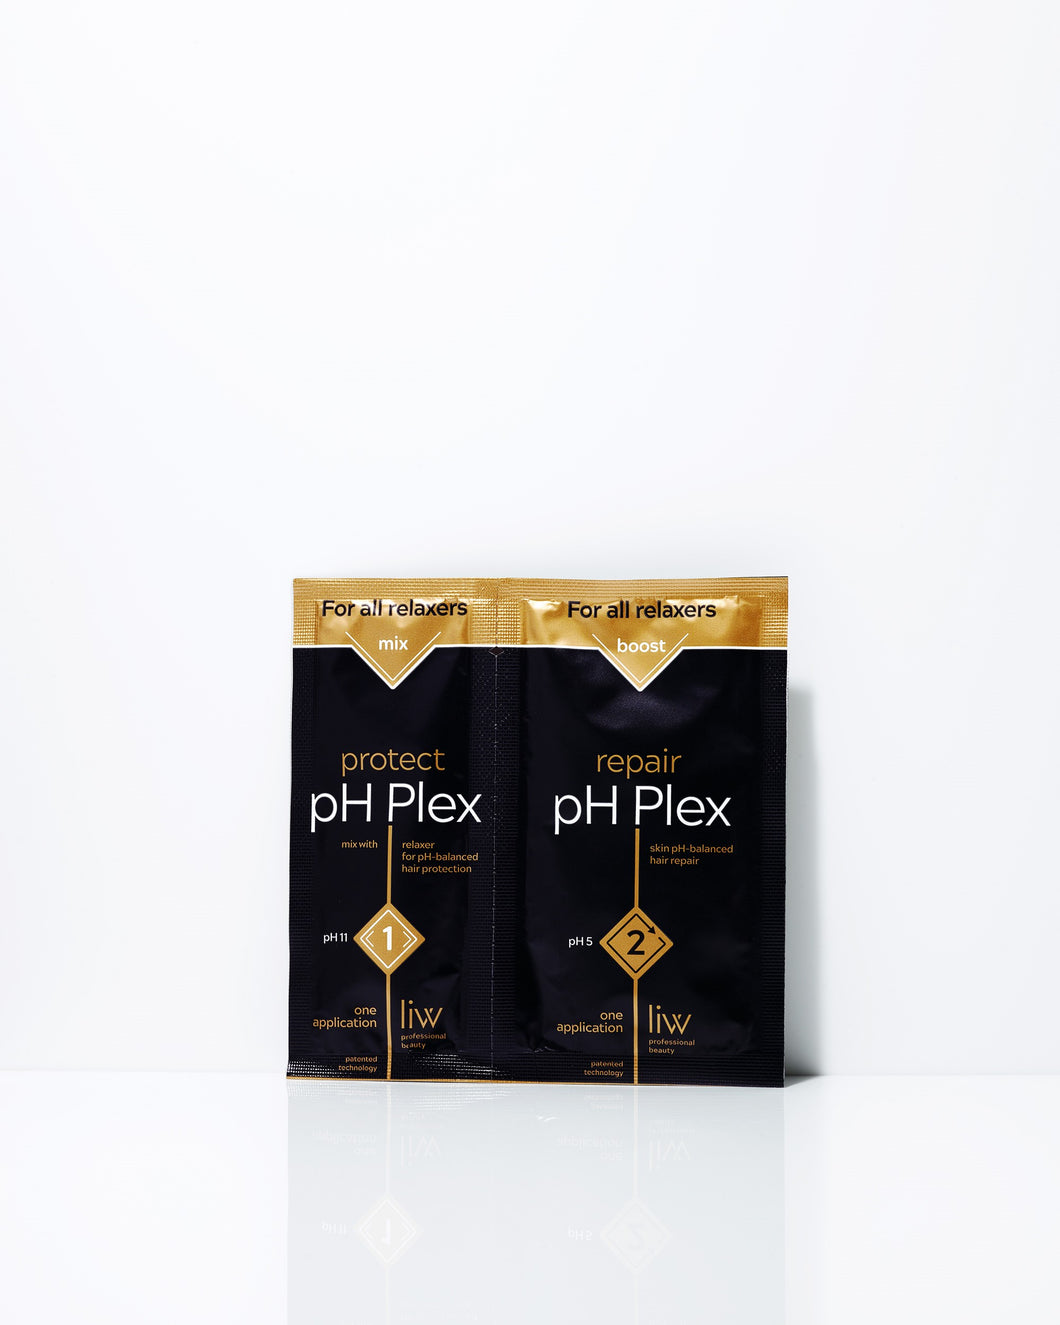 pH Plex Relaxer double sachet steps 1/2